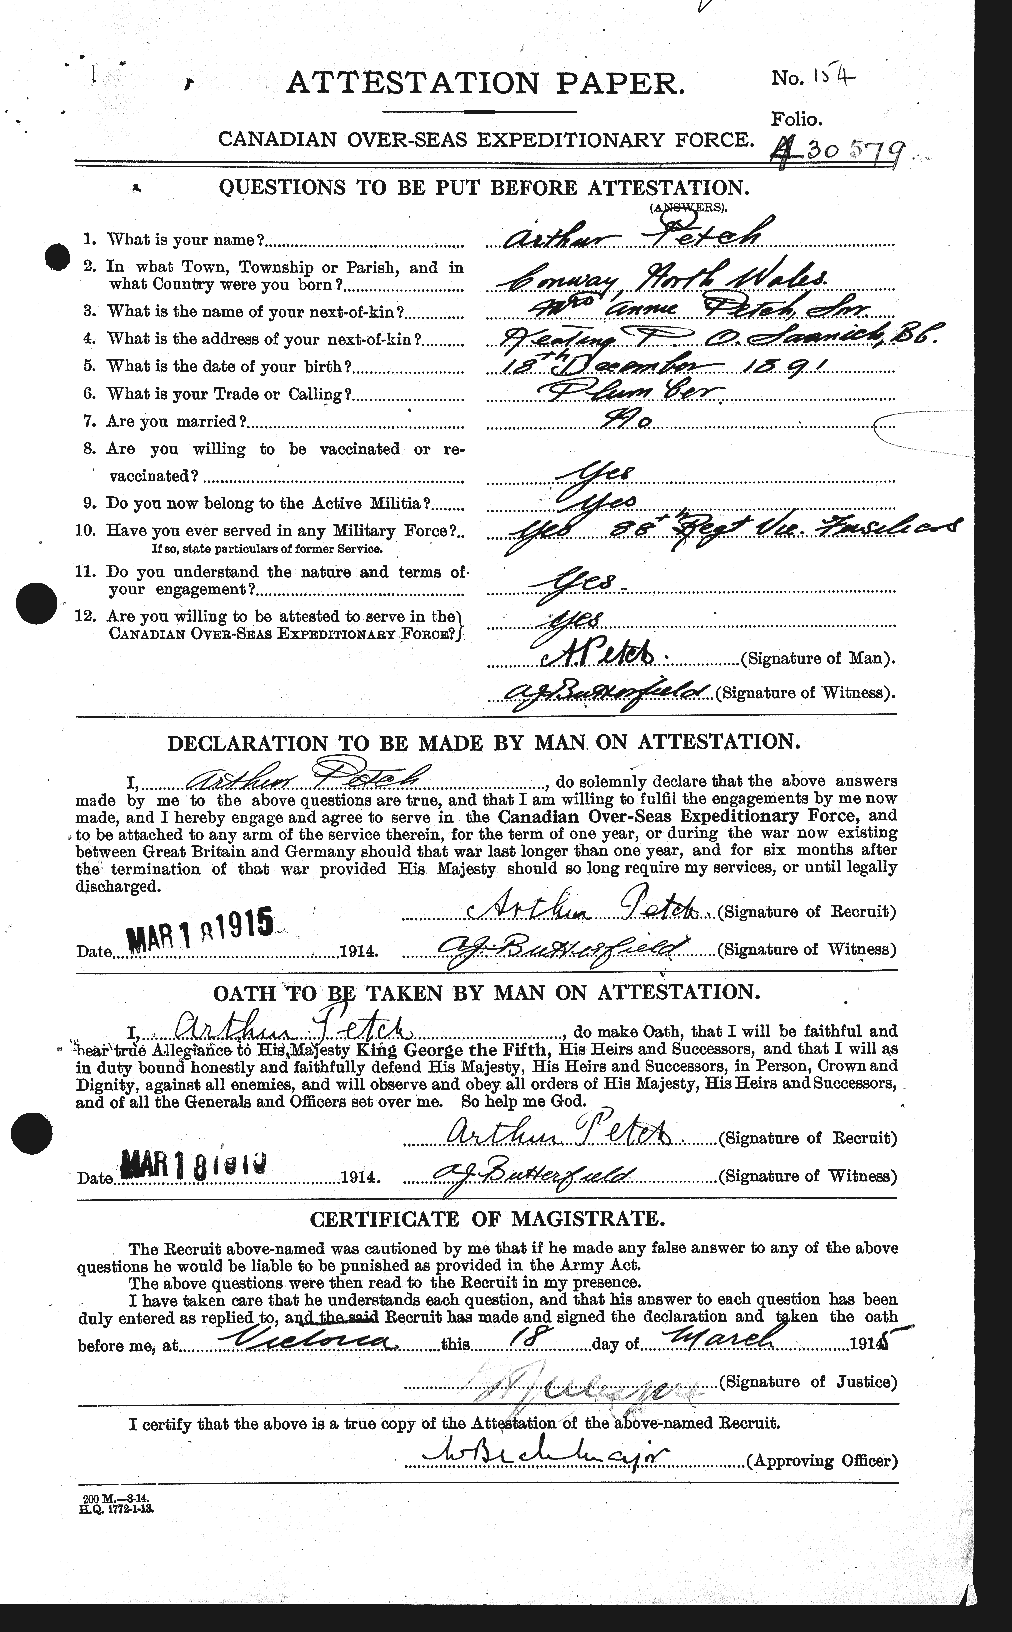 Dossiers du Personnel de la Première Guerre mondiale - CEC 575250a